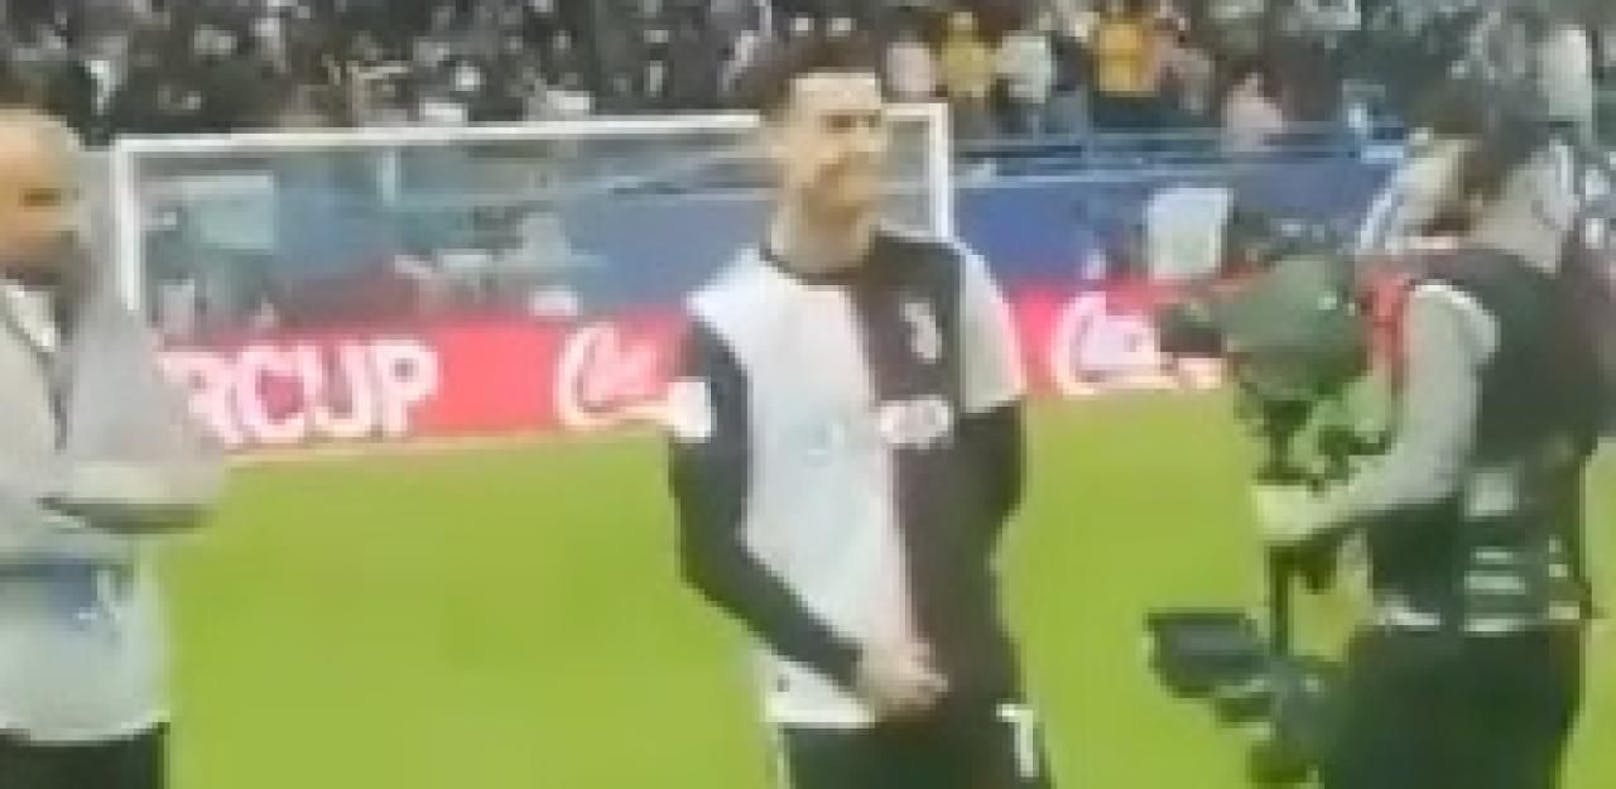 Cristiano Ronaldo lässt sich von Fans provozieren, zu einer vulgären Geste hinreißen.